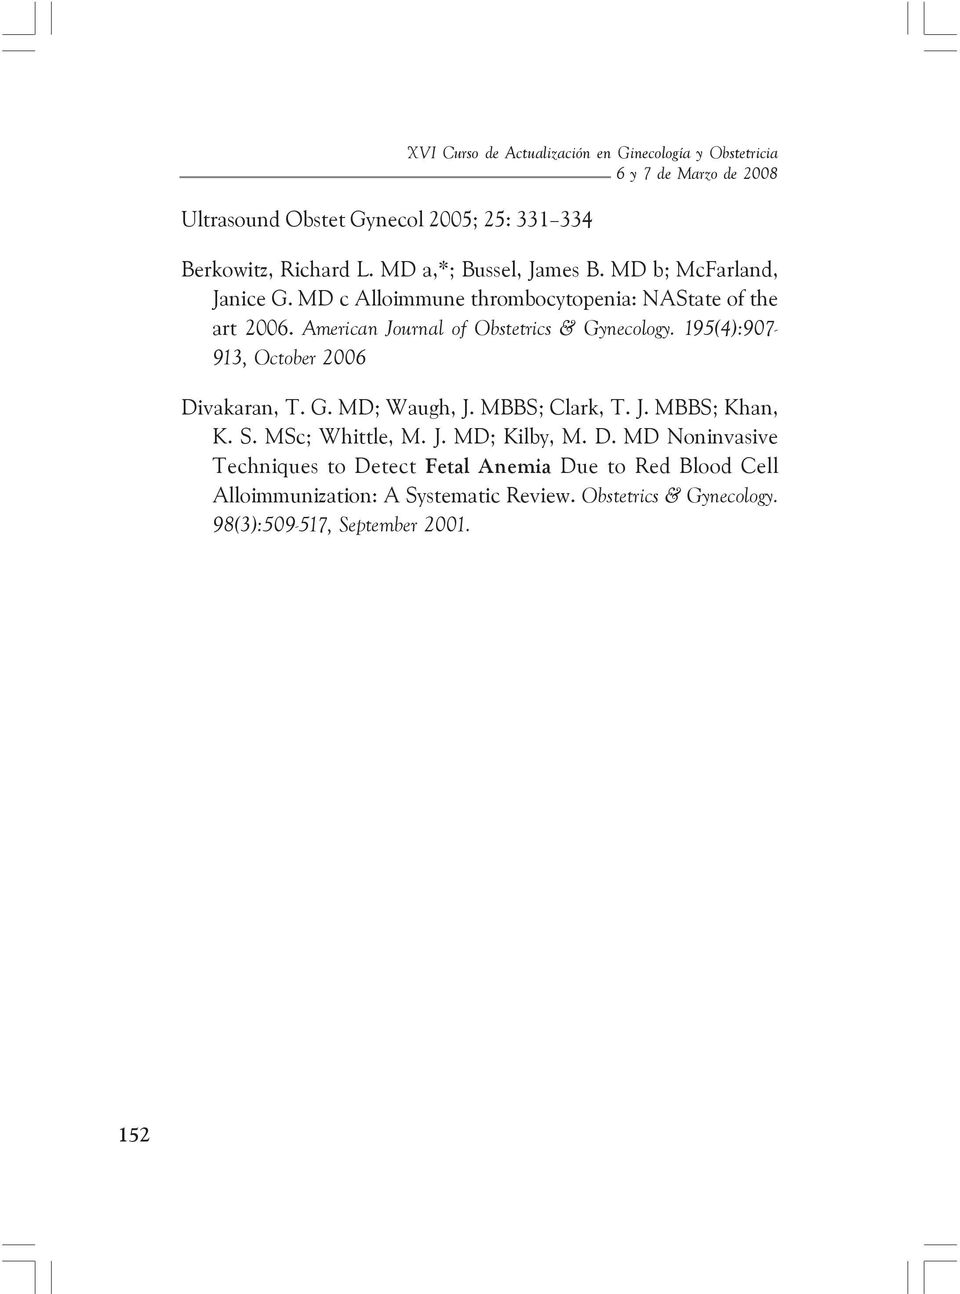 American Journal of Obstetrics & Gynecology. 195(4):907-913, October 2006 Divakaran, T. G. MD; Waugh, J. MBBS; Clark, T. J. MBBS; Khan, K. S.